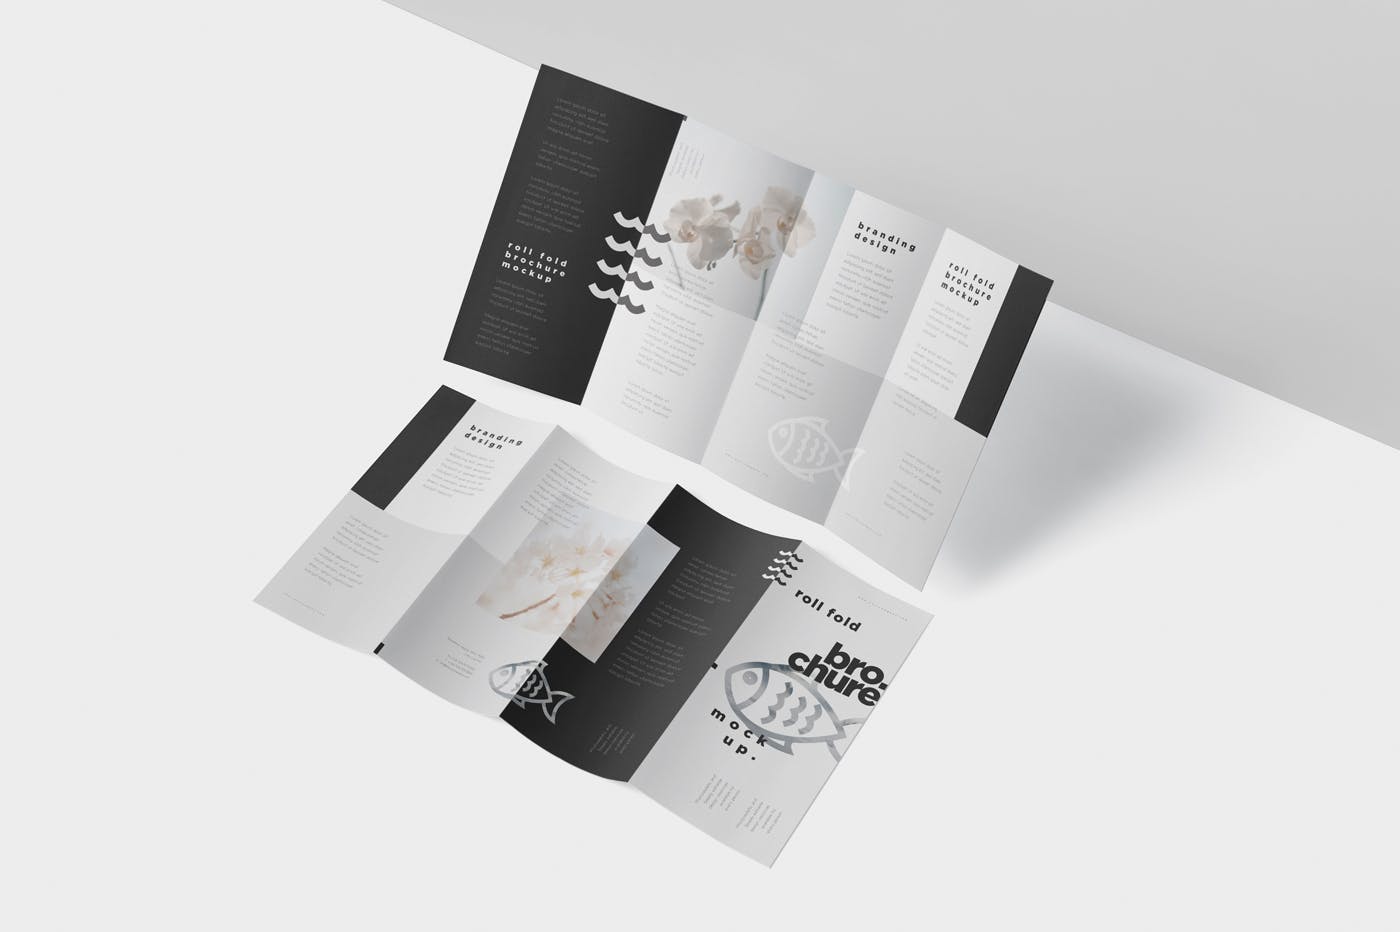 折叠设计风格企业传单/宣传册设计样机16设计网精选 Roll-Fold Brochure Mockup – DL DIN Lang Size插图(3)